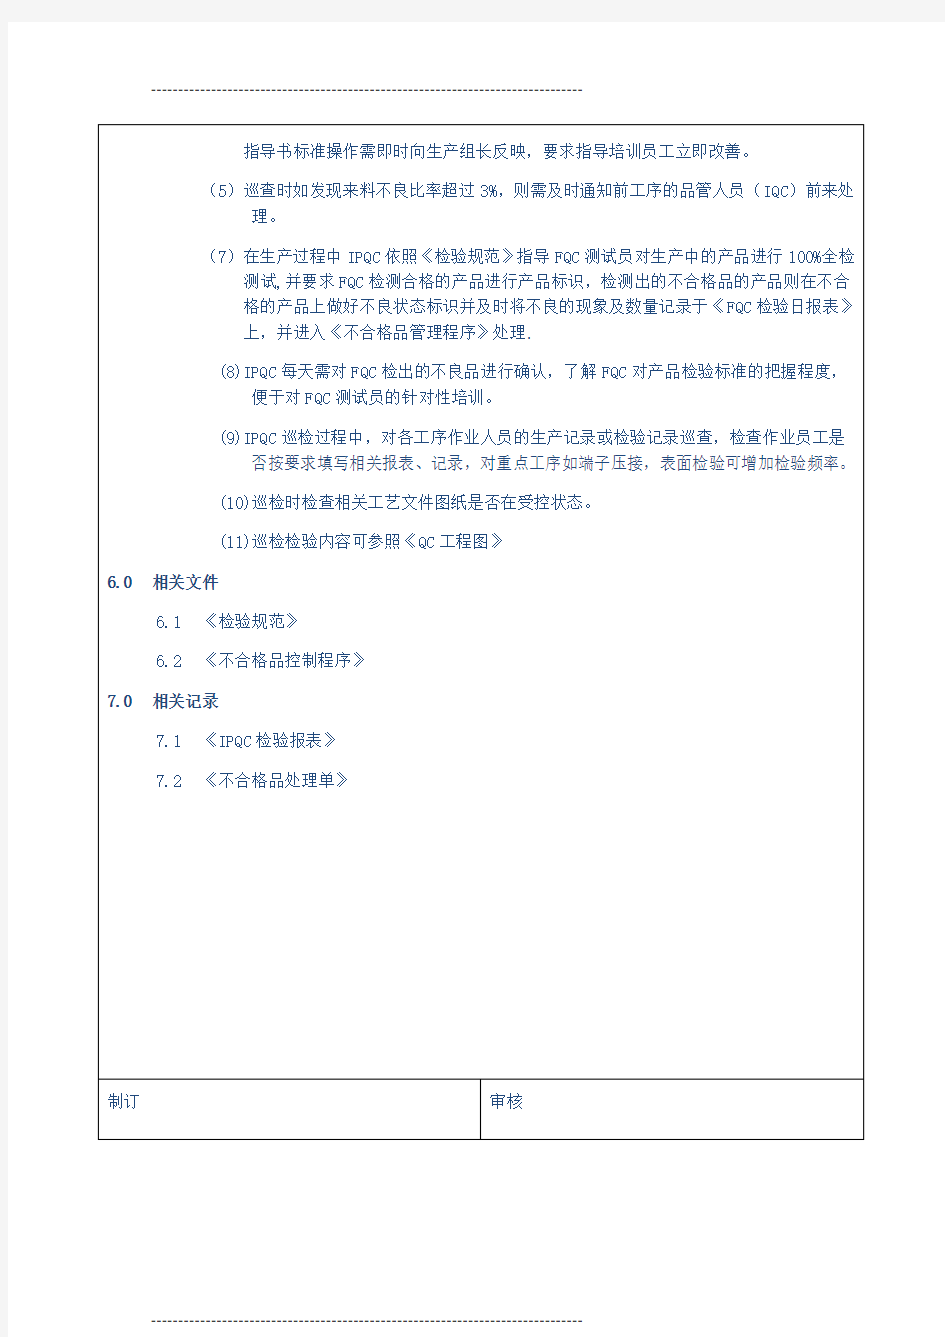 IPQC作业指导书66132